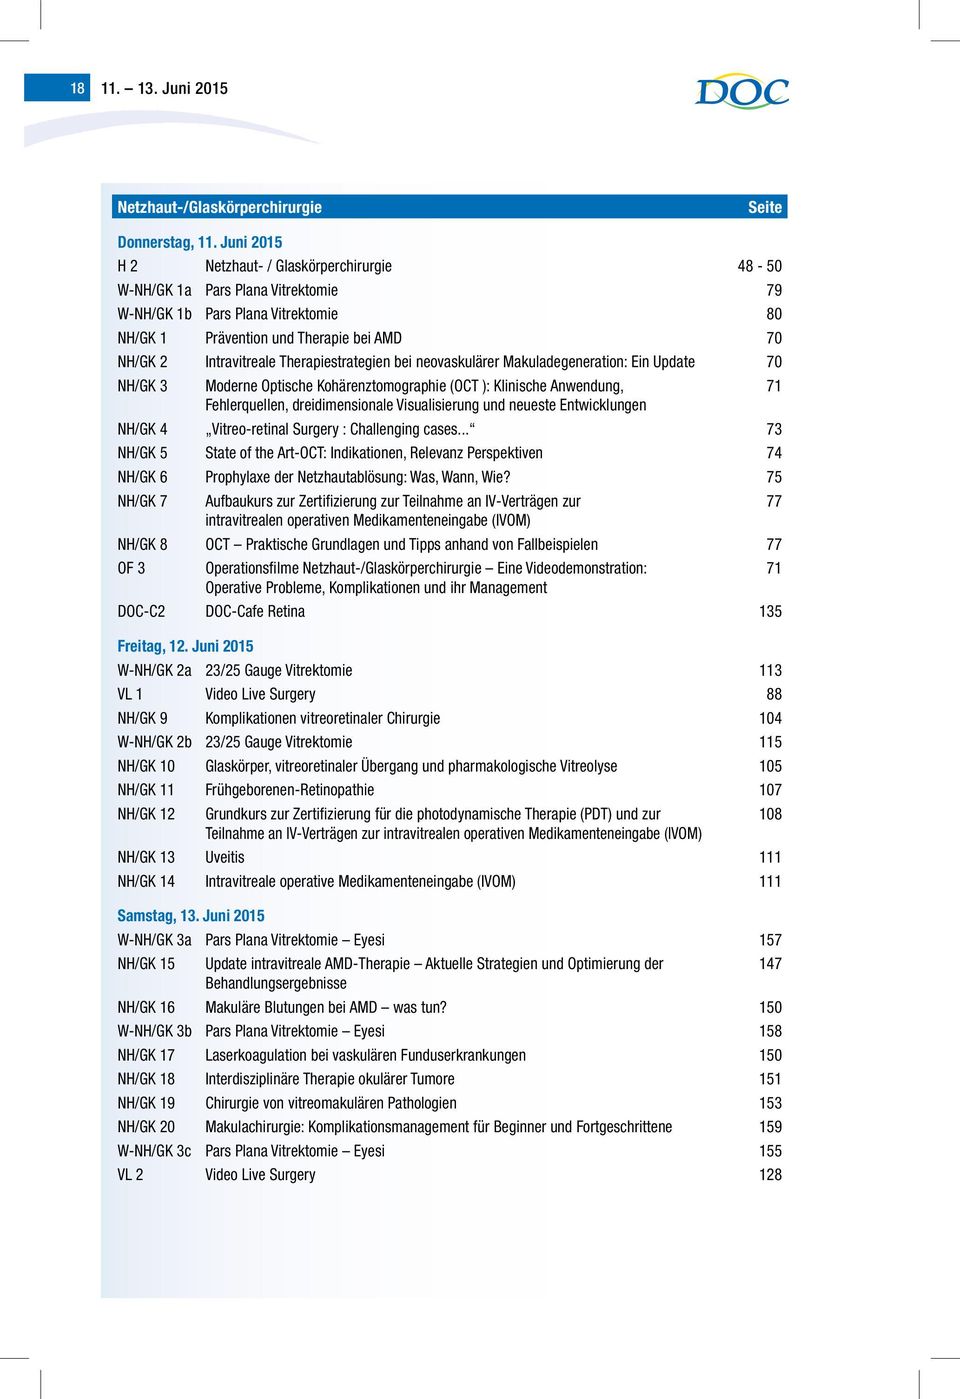 Therapiestrategien bei neovaskulärer Makuladegeneration: Ein Update 70 NH/GK 3 Moderne Optische Kohärenztomographie (OCT ): Klinische Anwendung, 71 Fehlerquellen, dreidimensionale Visualisierung und